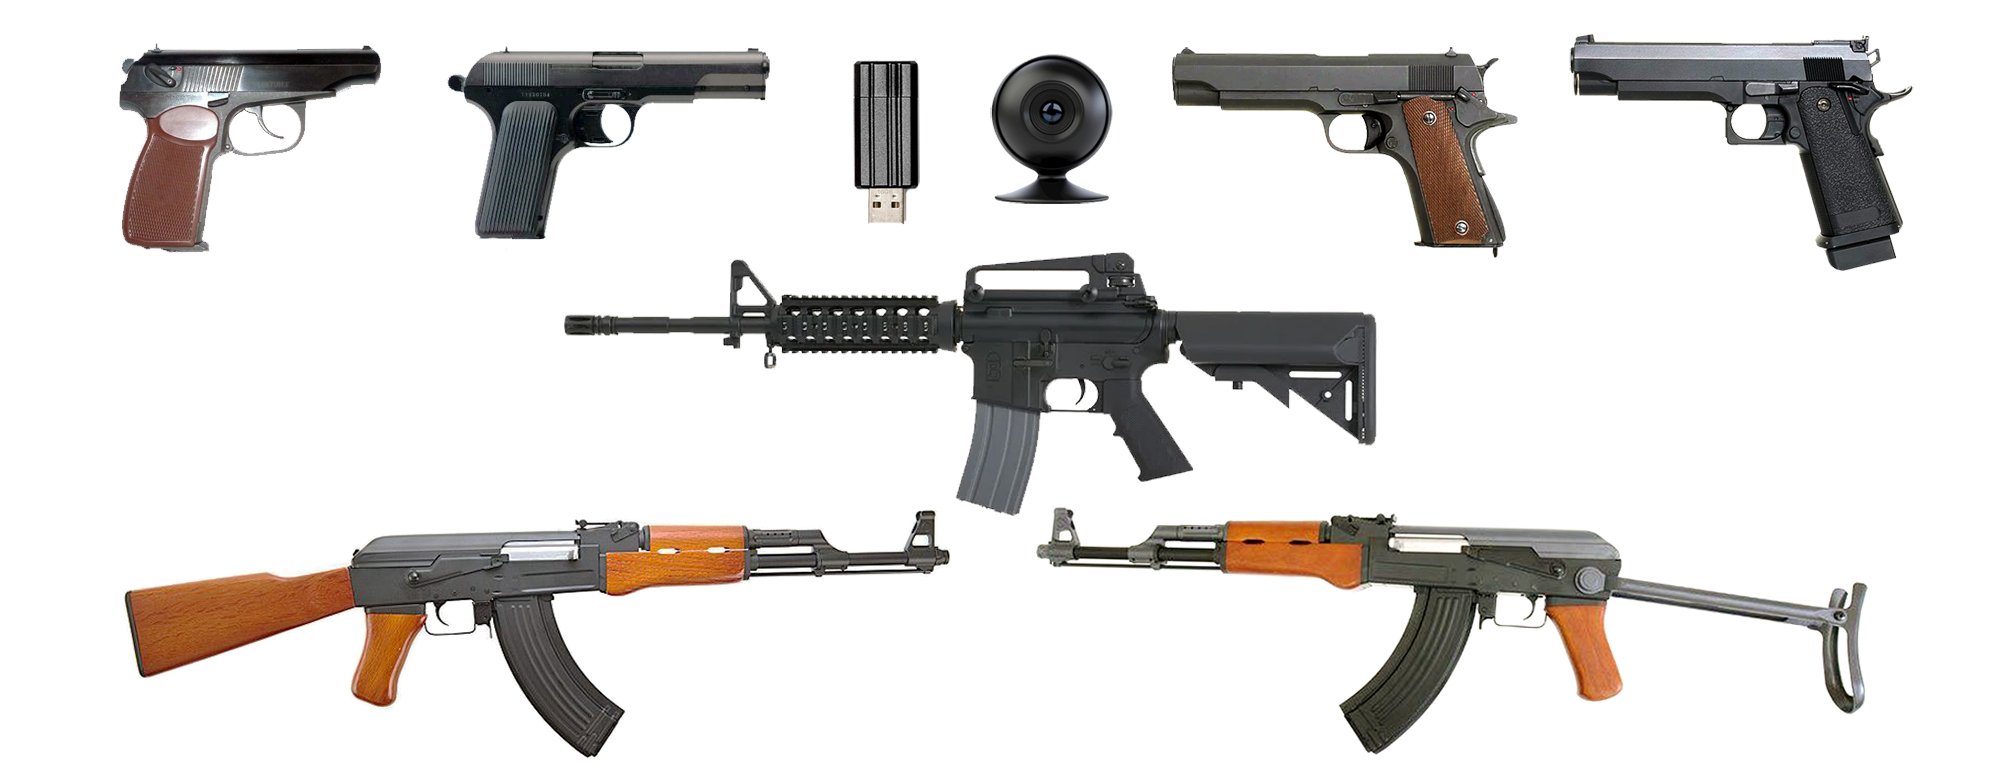 Состав комплекта Интерактивный лазерный тир. Бизнес-7: игровое оружие (4 пистолета, 3 автомата), камера, флешка с программным обеспечением